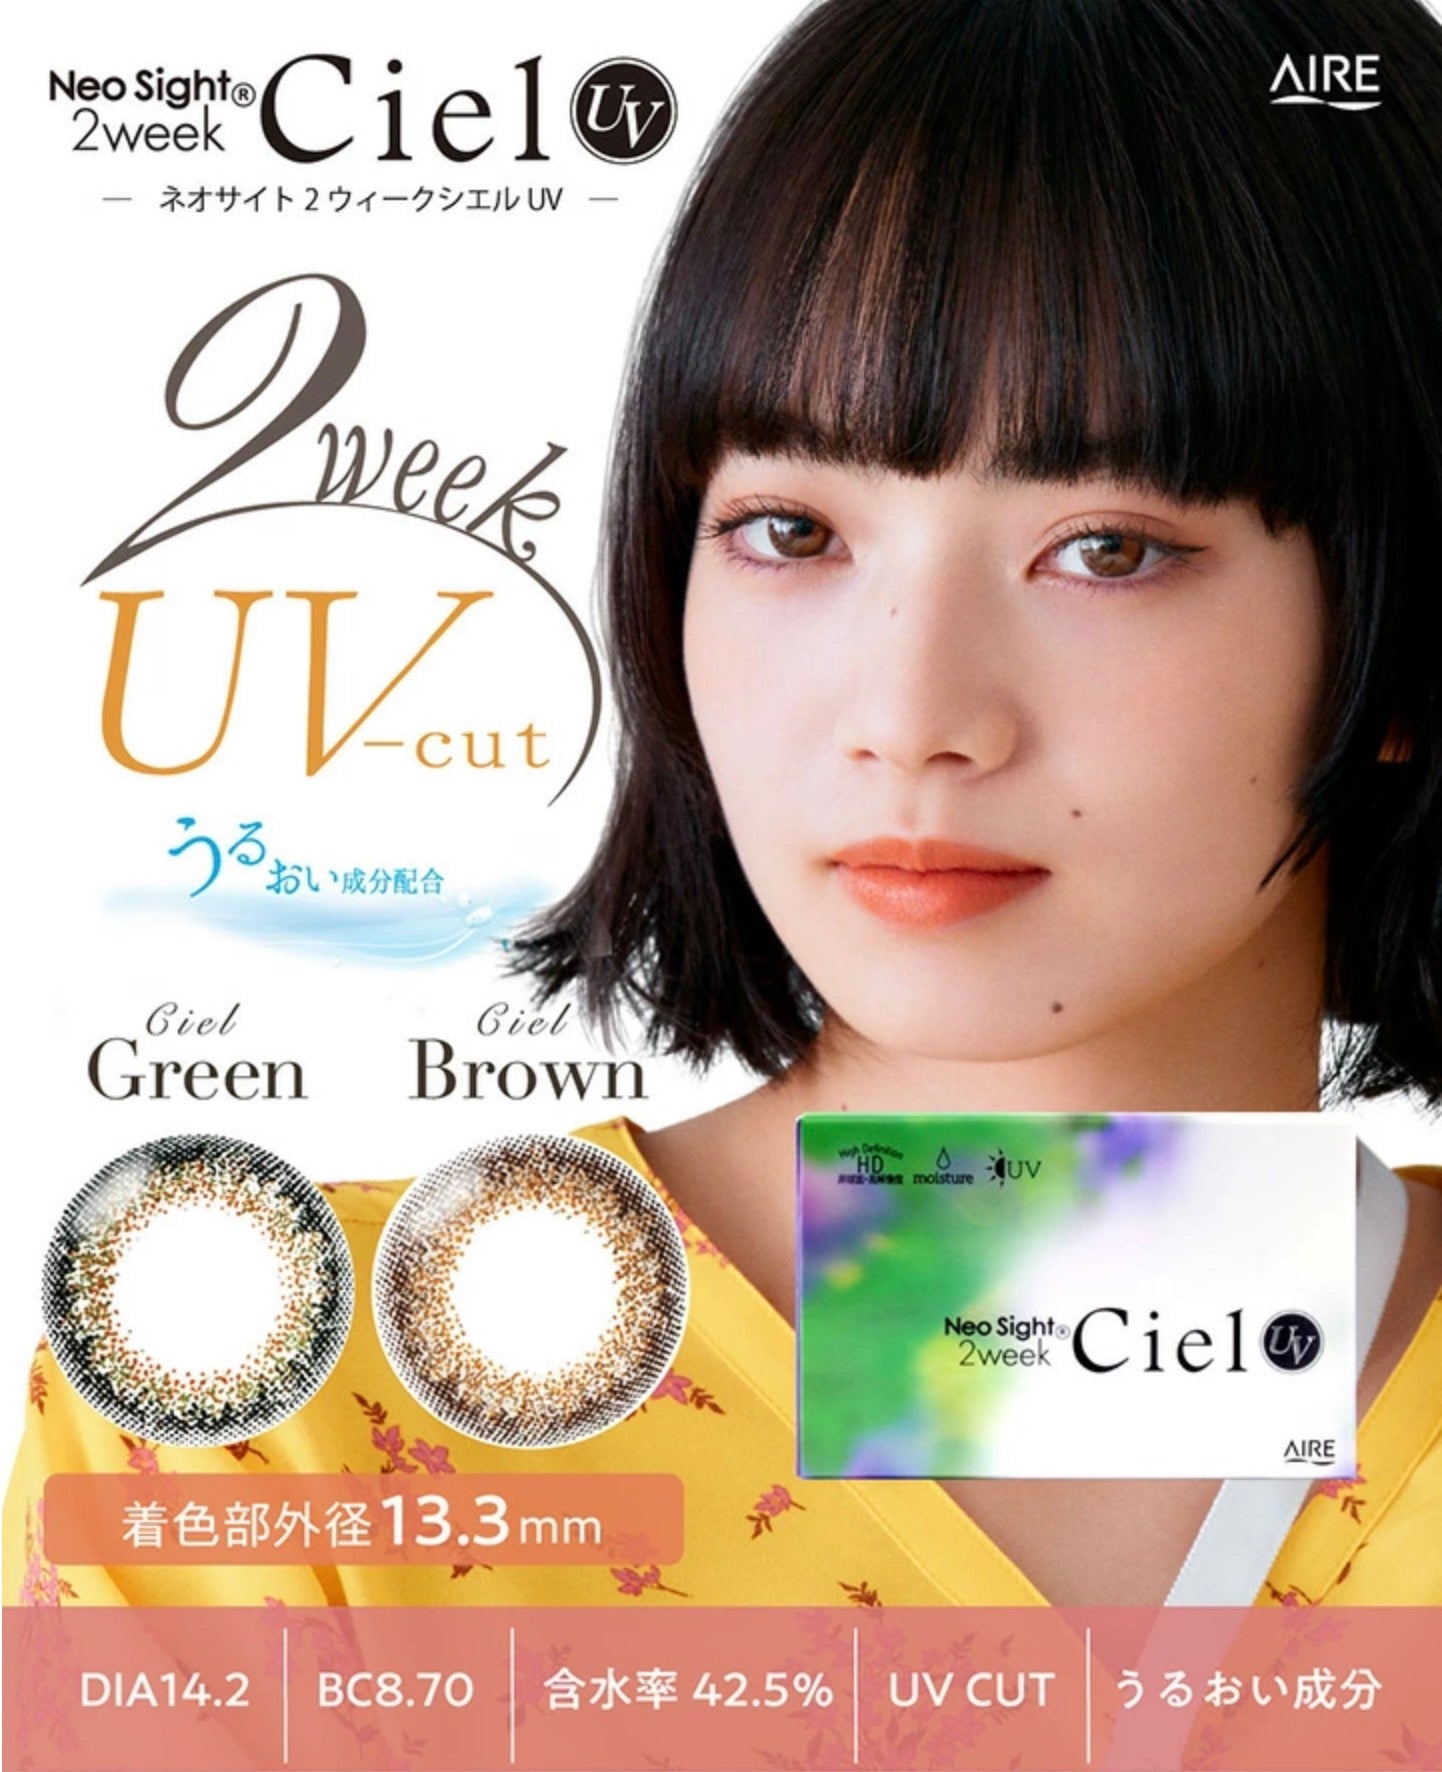 双周抛美瞳2WEEK Neo Sight Ciel UV 一盒6片装 Brown 同系列2盒起9折优惠!